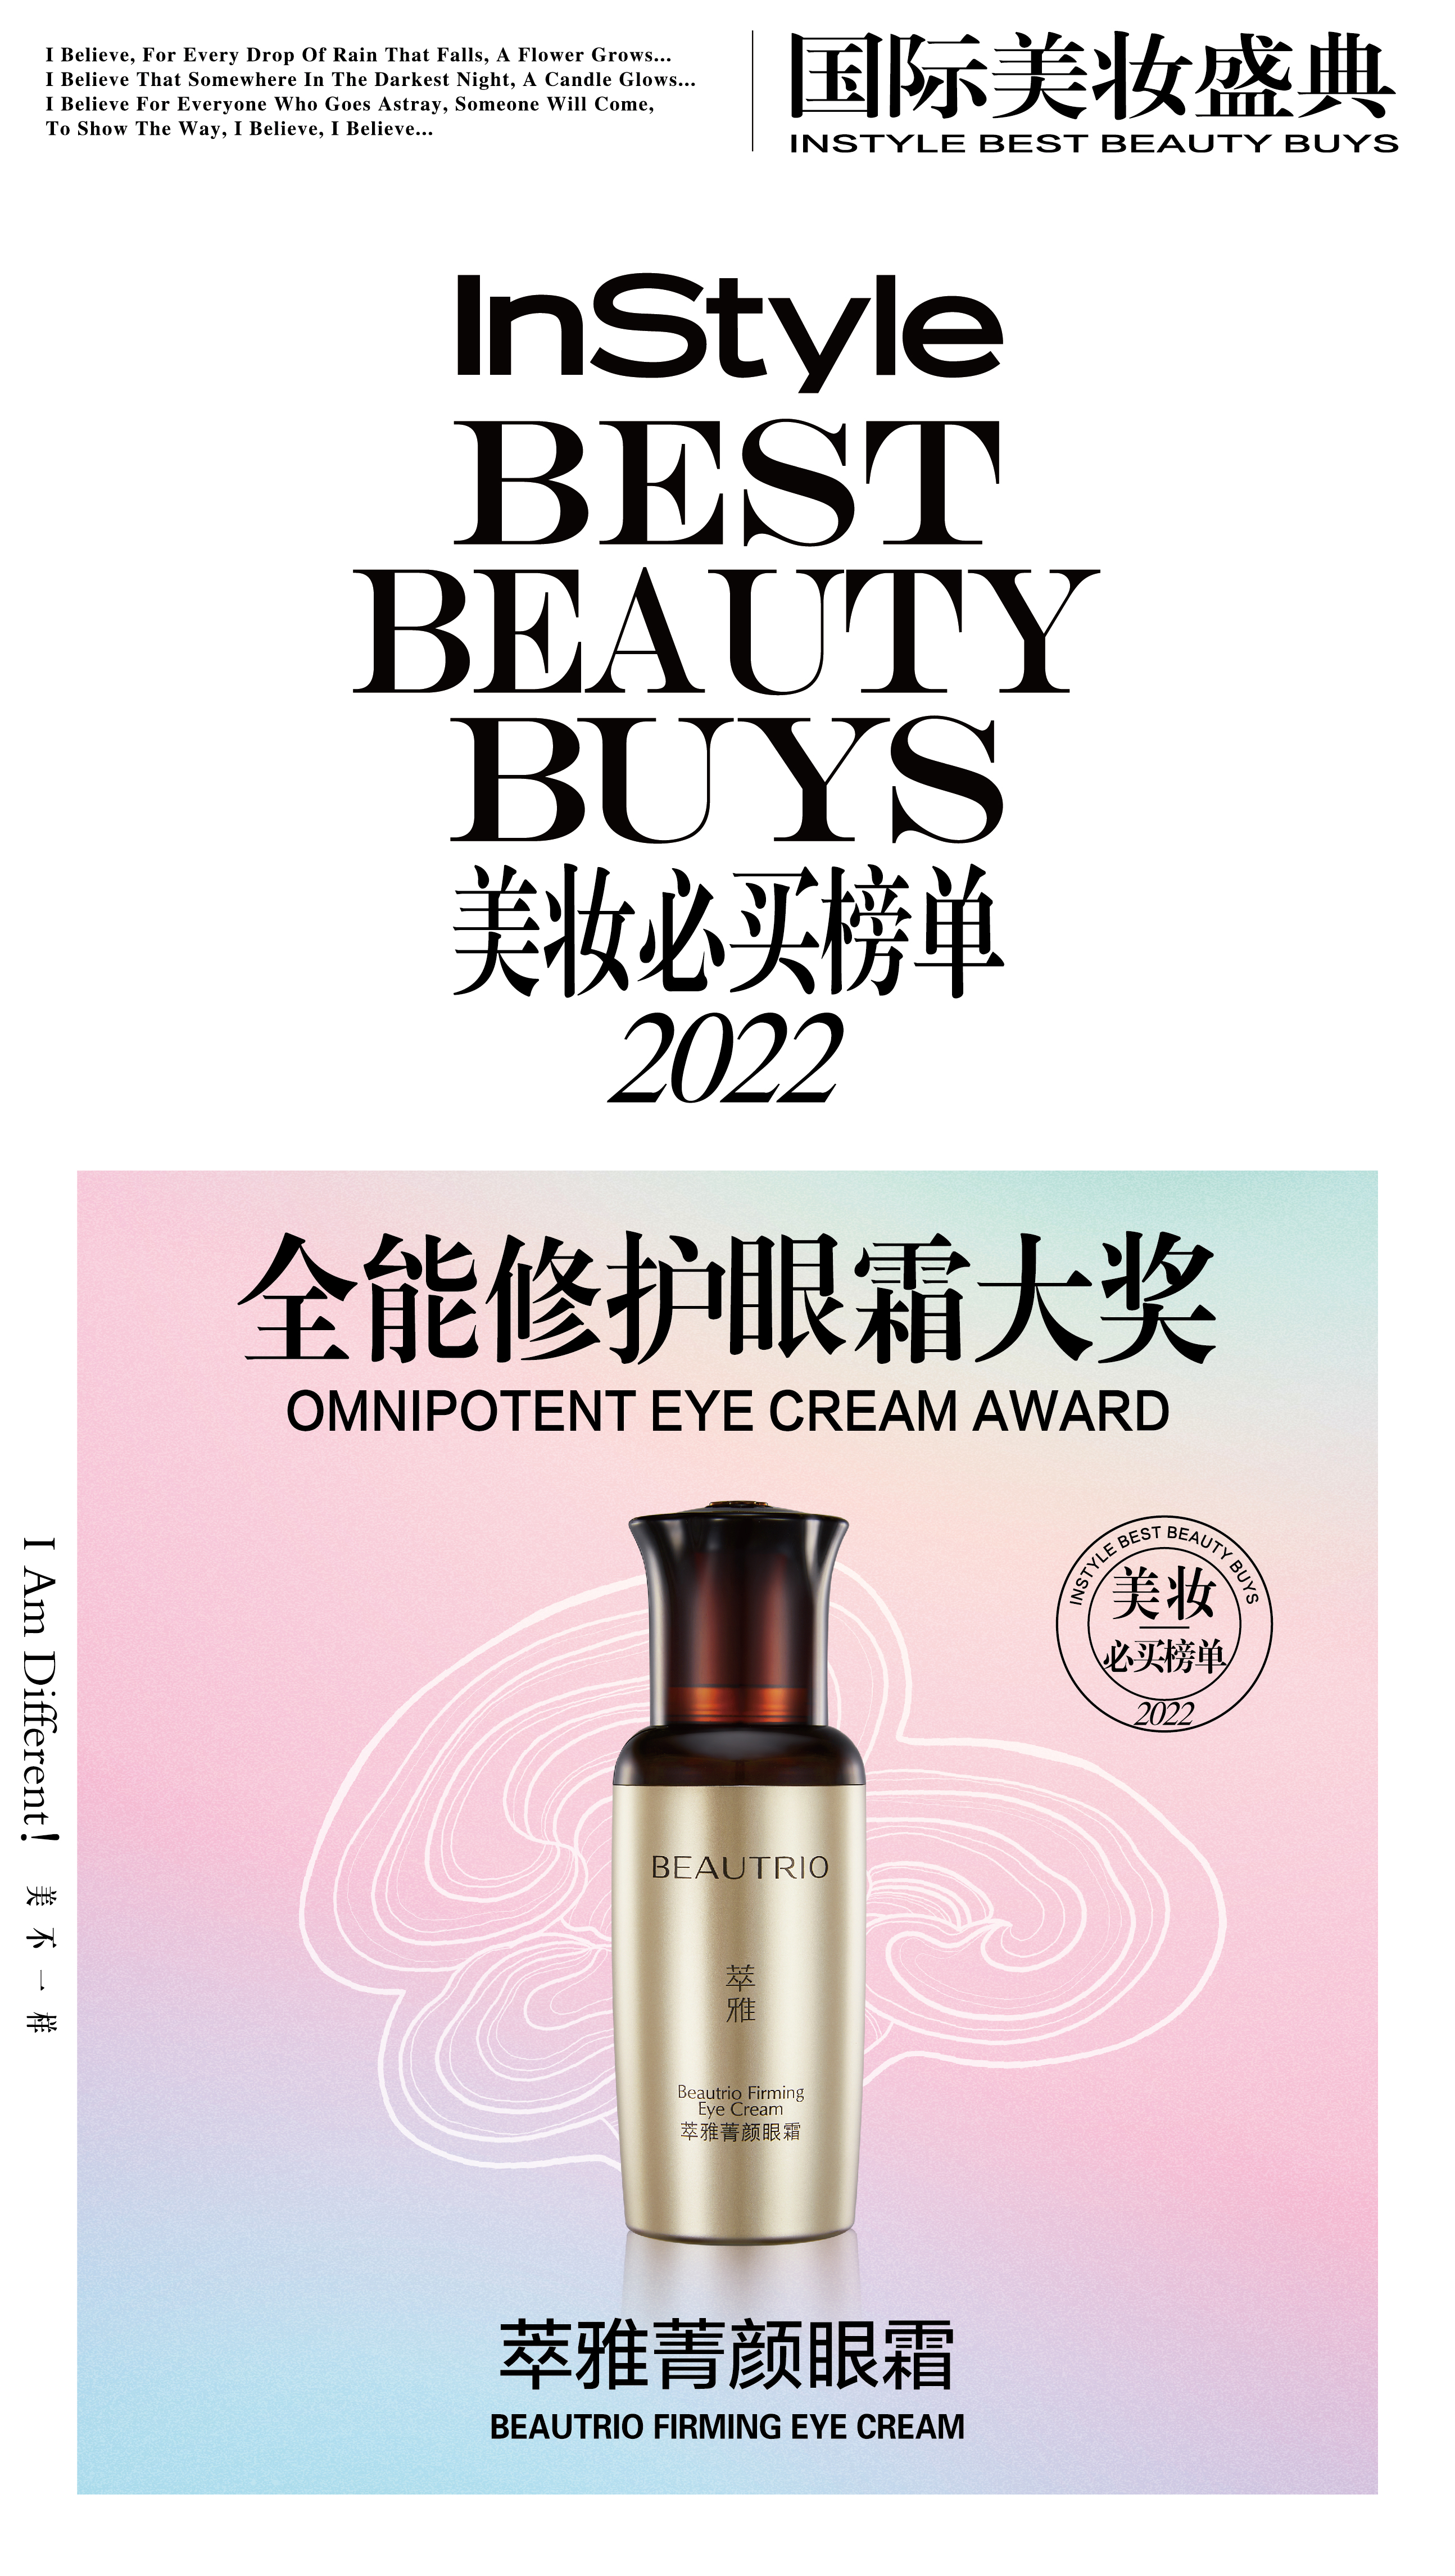 萃雅xINSTYLE国际美妆盛典-获奖海报20220915-ol-03(1)